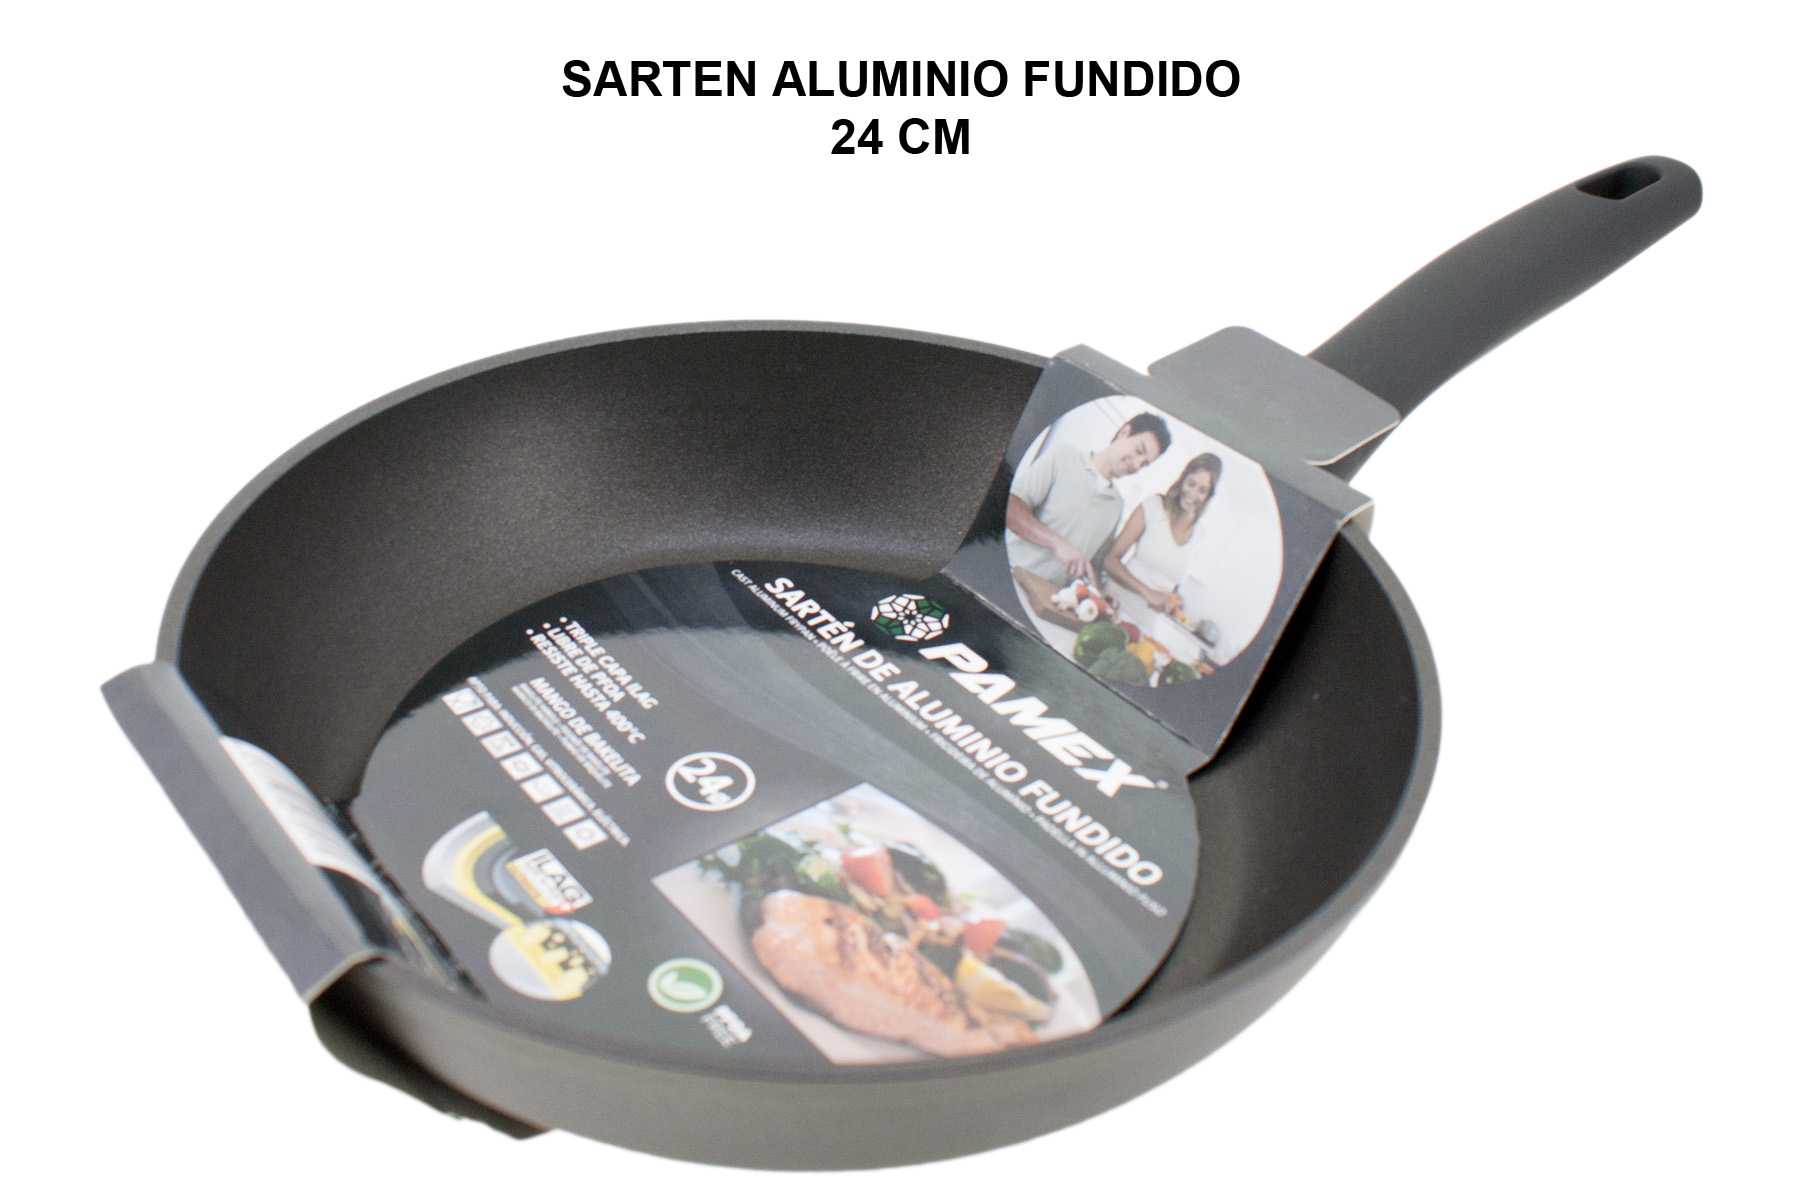 SARTEN ALUMINIO FUNDIDO FULL INDUCTION 24 CM